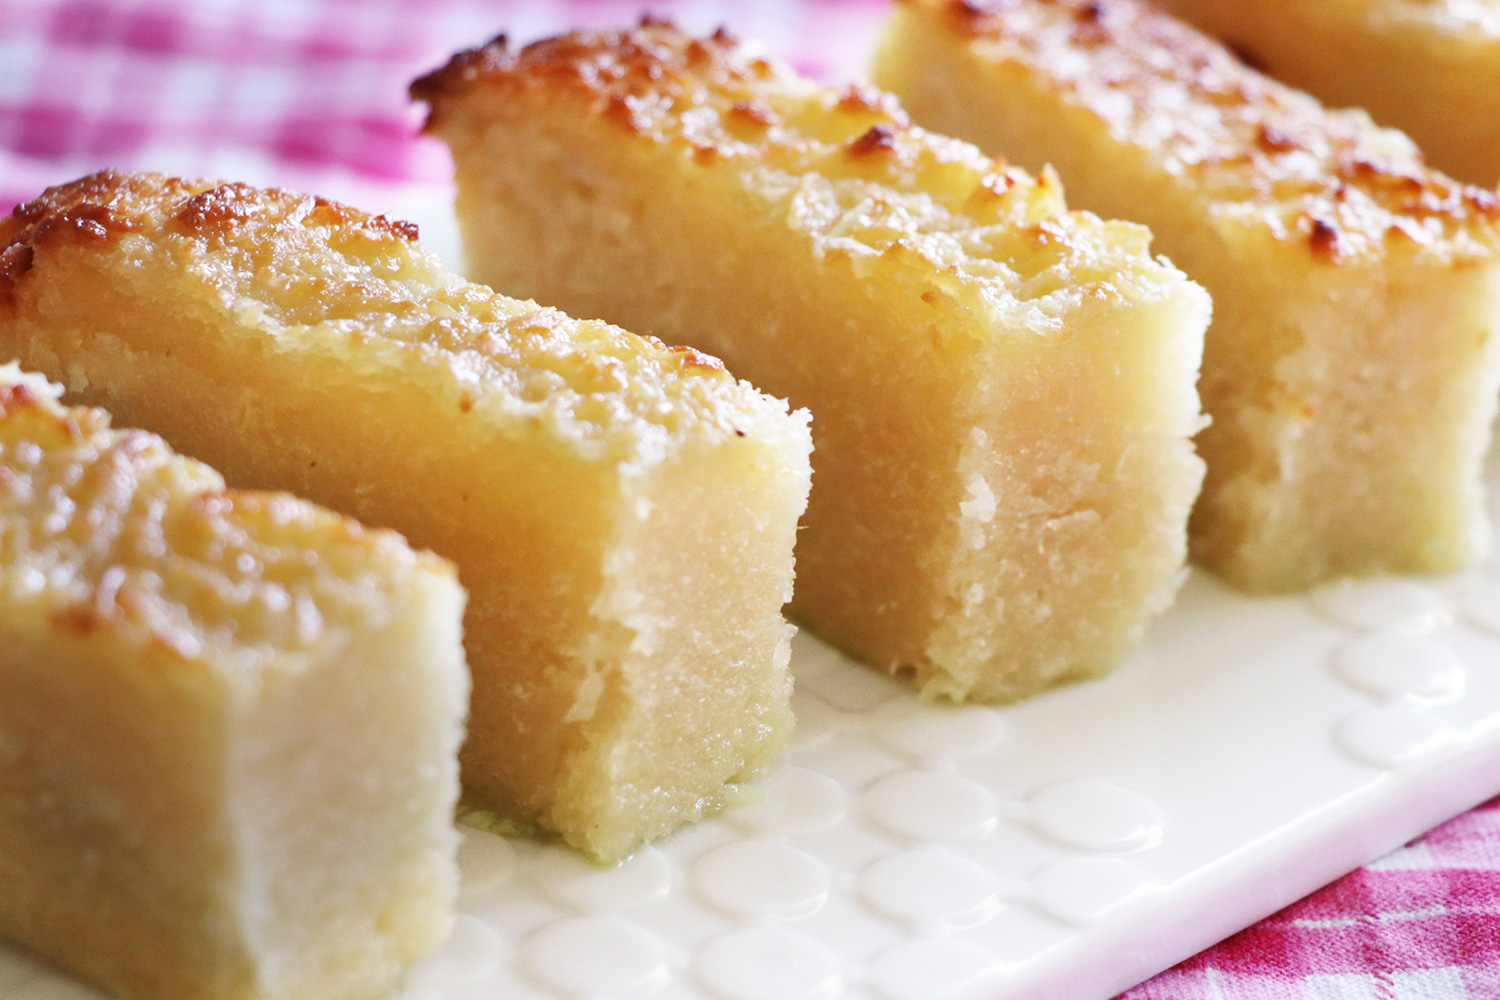 Chinese Bakery Sponge Cake (Chiffon Cake) - Mochi Mommy